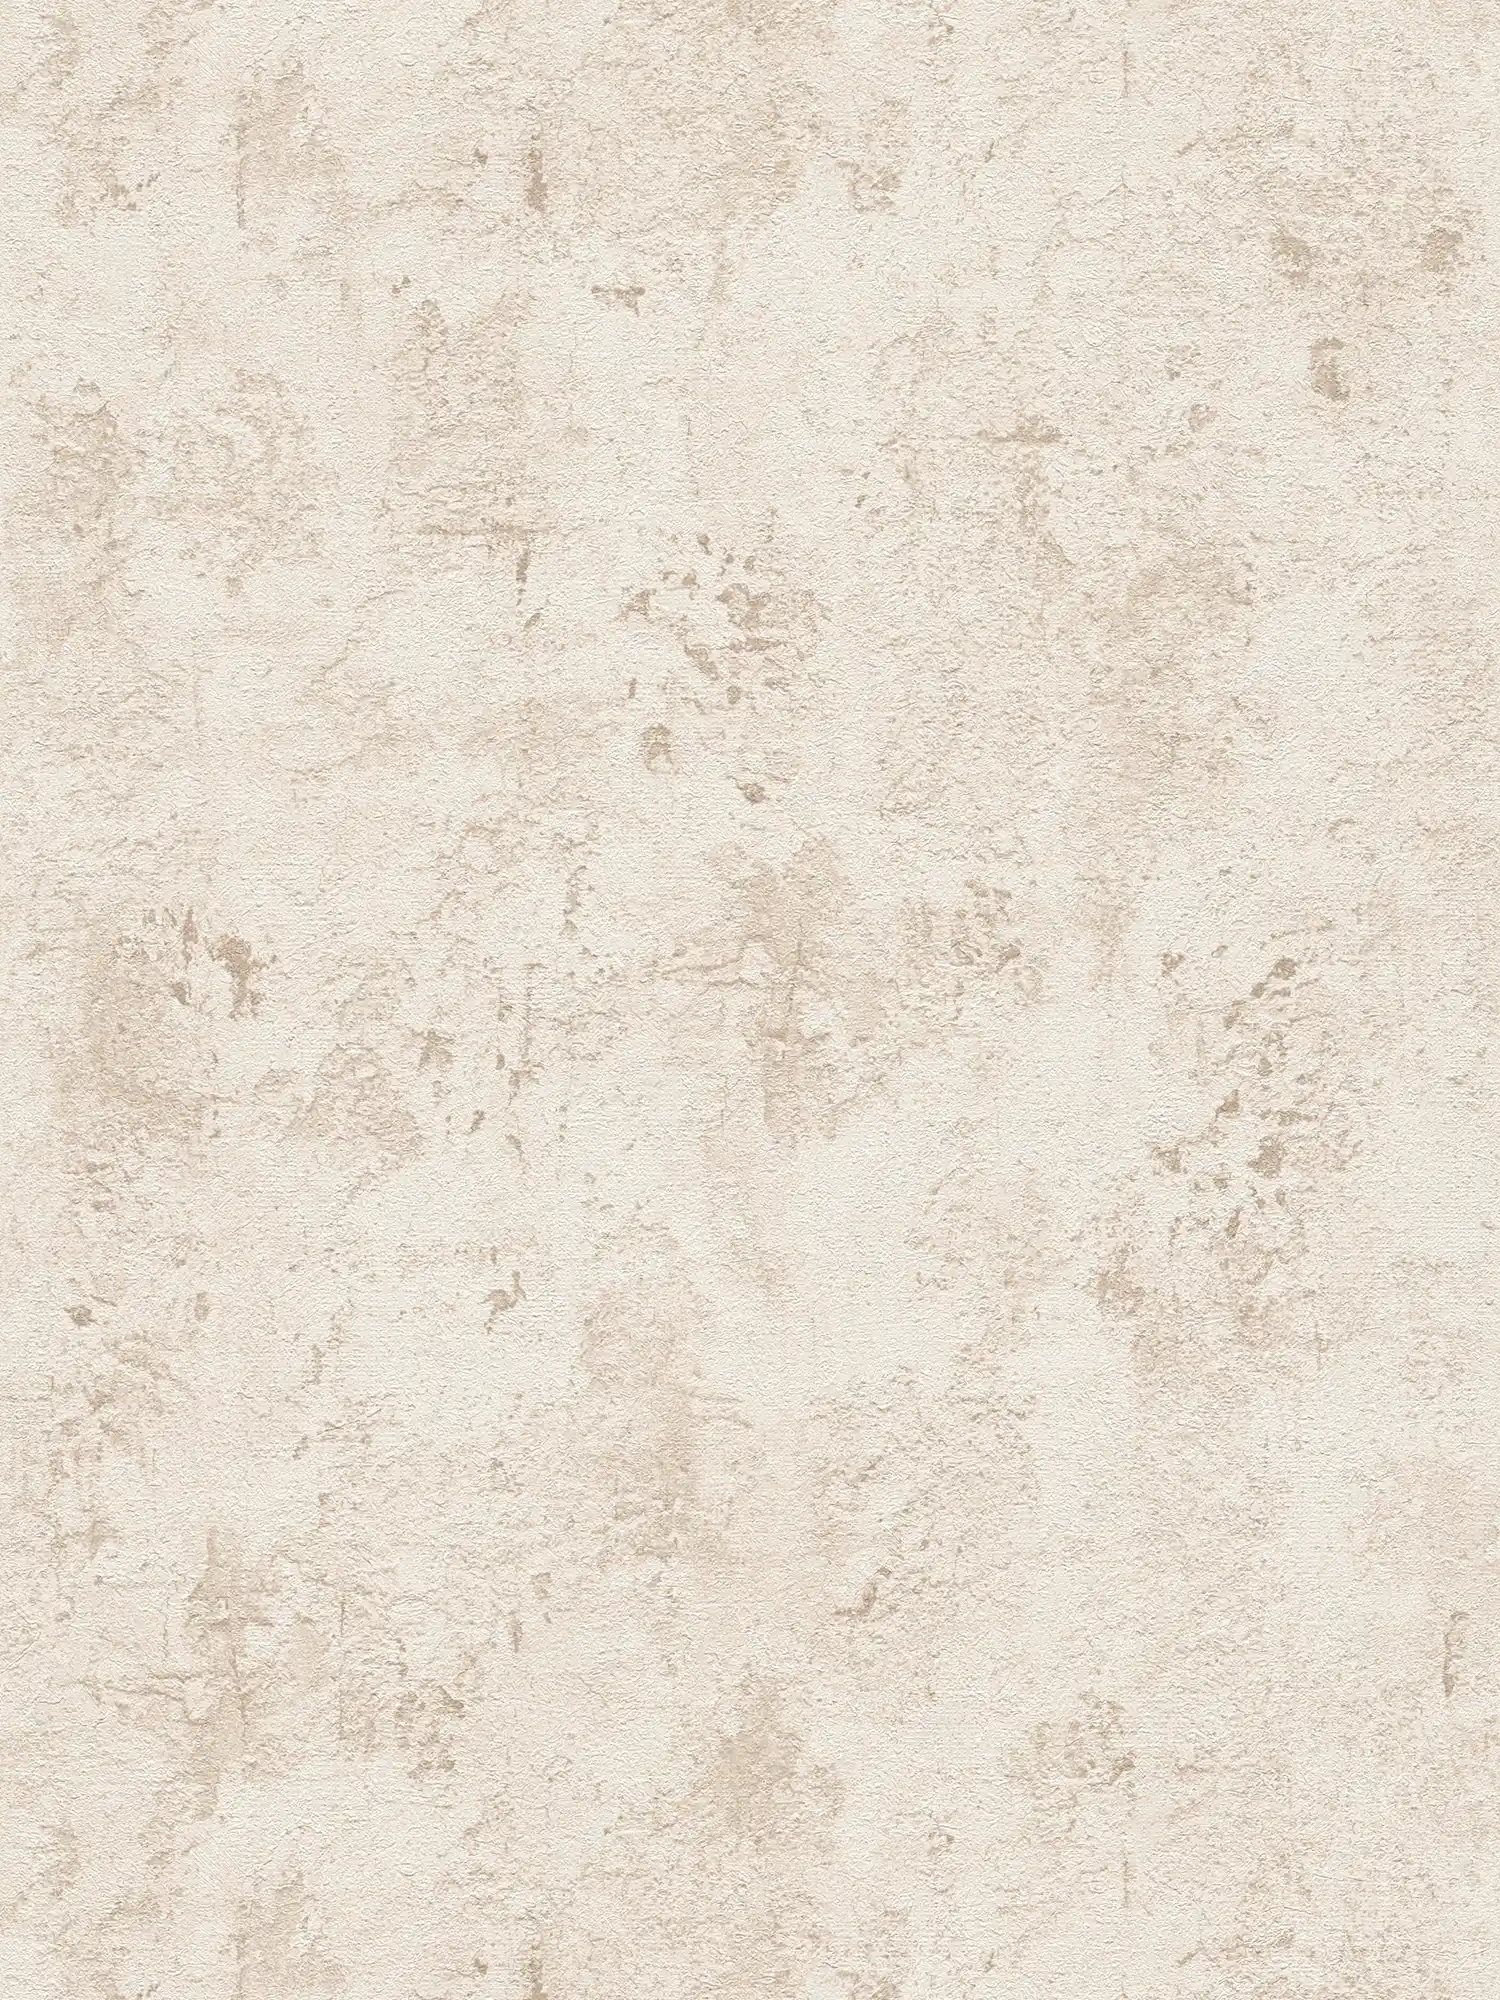         Beige wallpaper with rustic texture design in plaster look
    